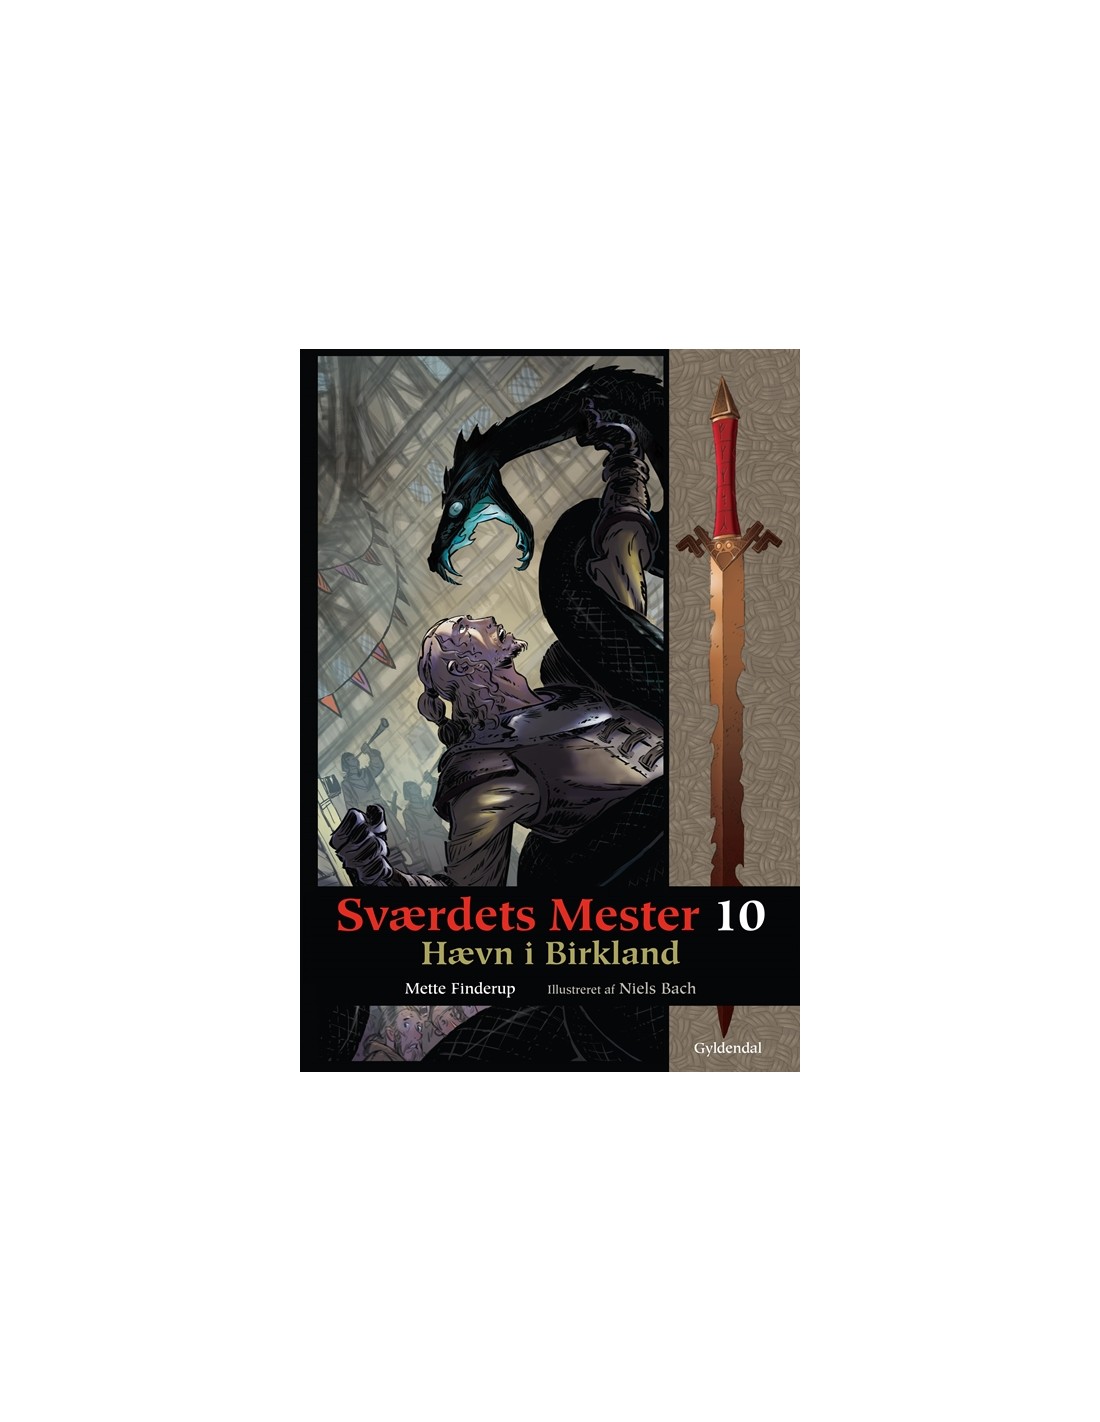 Sværdets 10 - Hævn i - ISBN 9788702089448 skrevet Mette Finderup